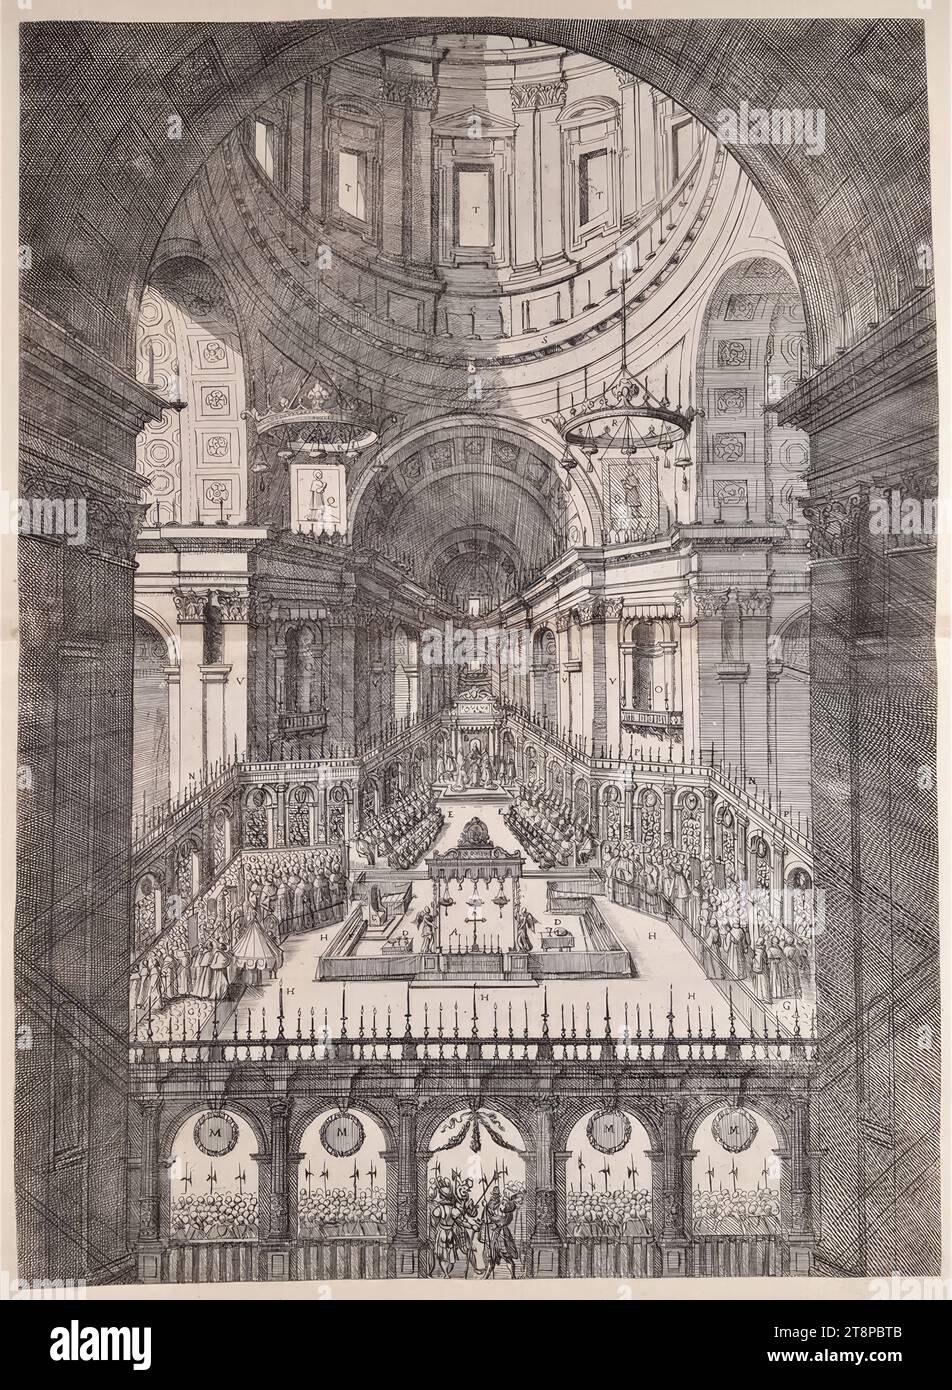 Zeremonie zur Heiligsprechung von Charles Borromeo in St. Peter in Rom am 1. November 1610, 1610, Druckerei, Ätzen auf Papier, Blatt: 53 x 38,4 cm Stockfoto